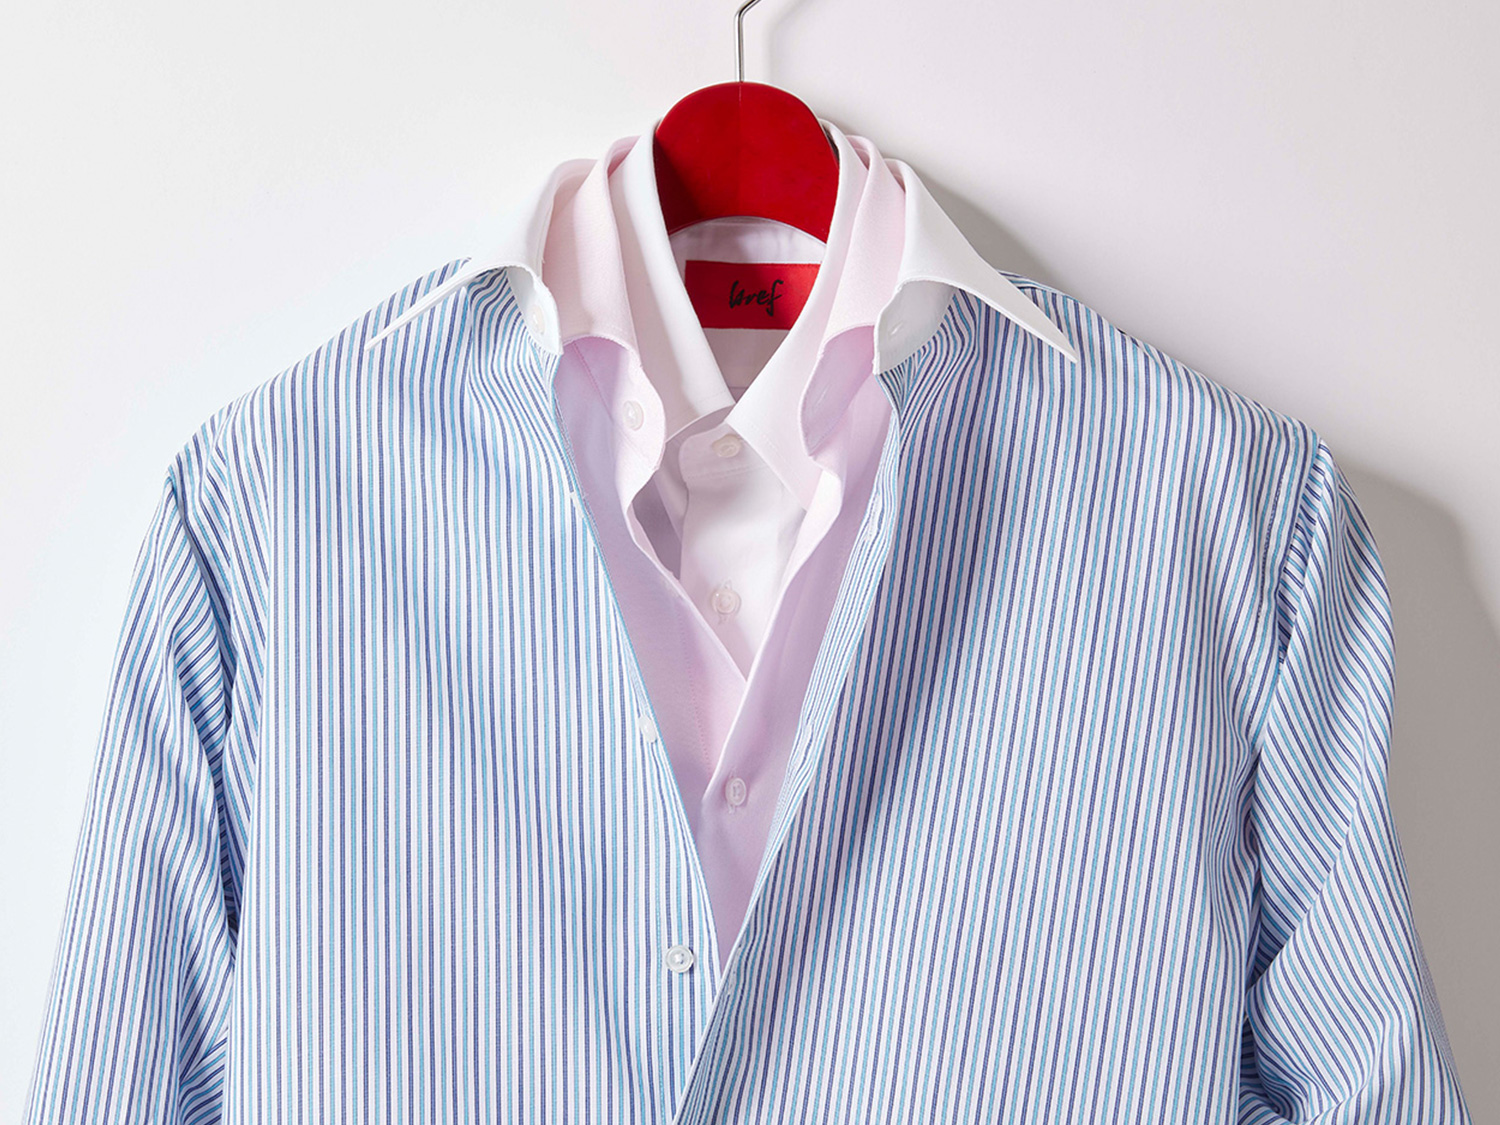 メンズ オーダーメイドスーツ bref（ブレフ）-シーン（フォーマル/カジュアル）に合わせたメンズシャツ（ワイシャツ）のおすすめコーデ（クレリックなど）をご提案